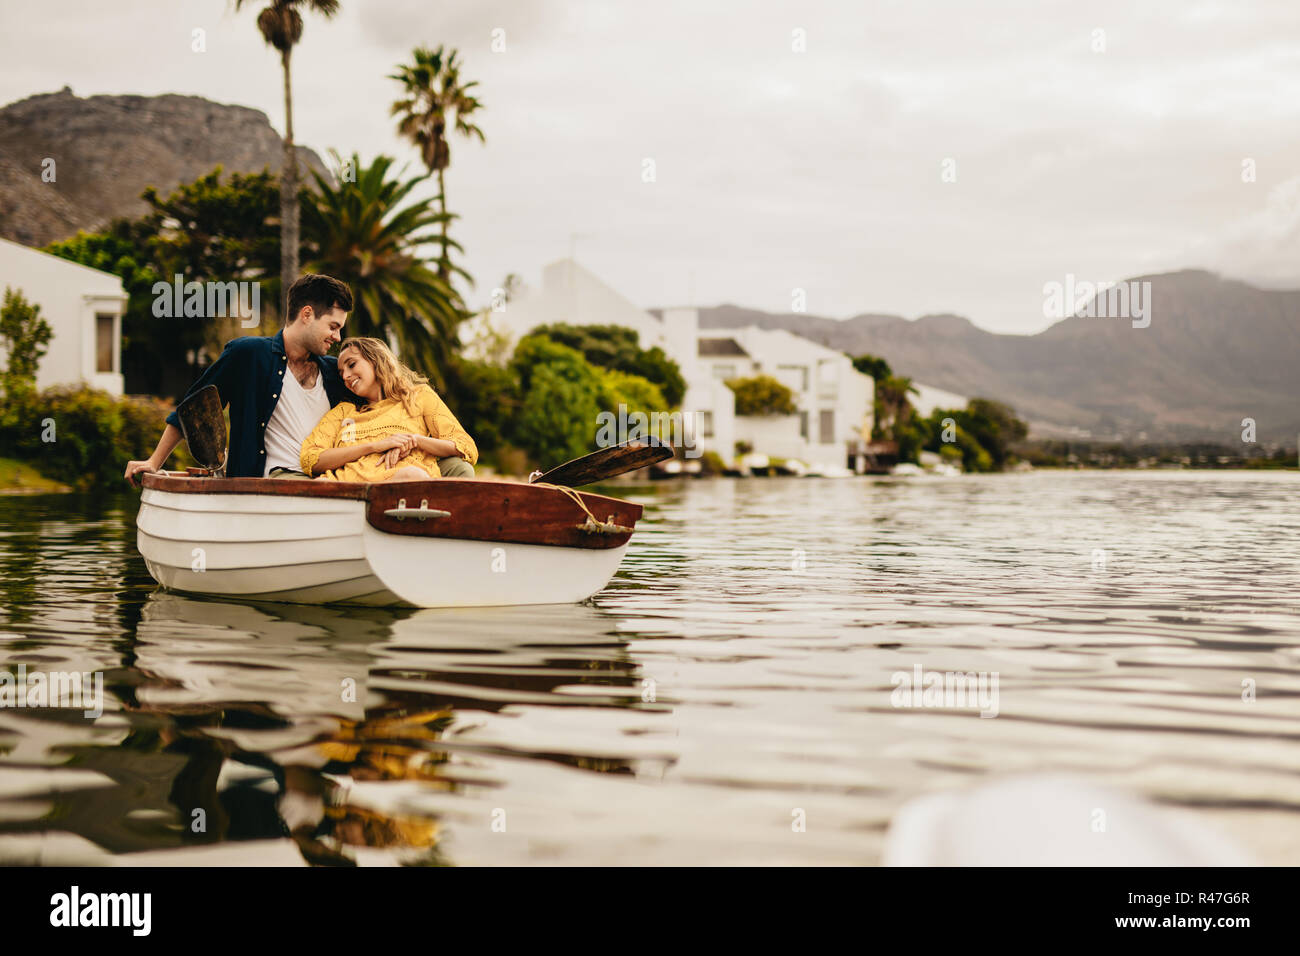 Junger Mann und Frau auf einem Boot Datum in einem See mit Hügeln und Häuser im Hintergrund. Frau sitzt entspannt lehnte sich auf ihren Freund auf einem Boot. Stockfoto